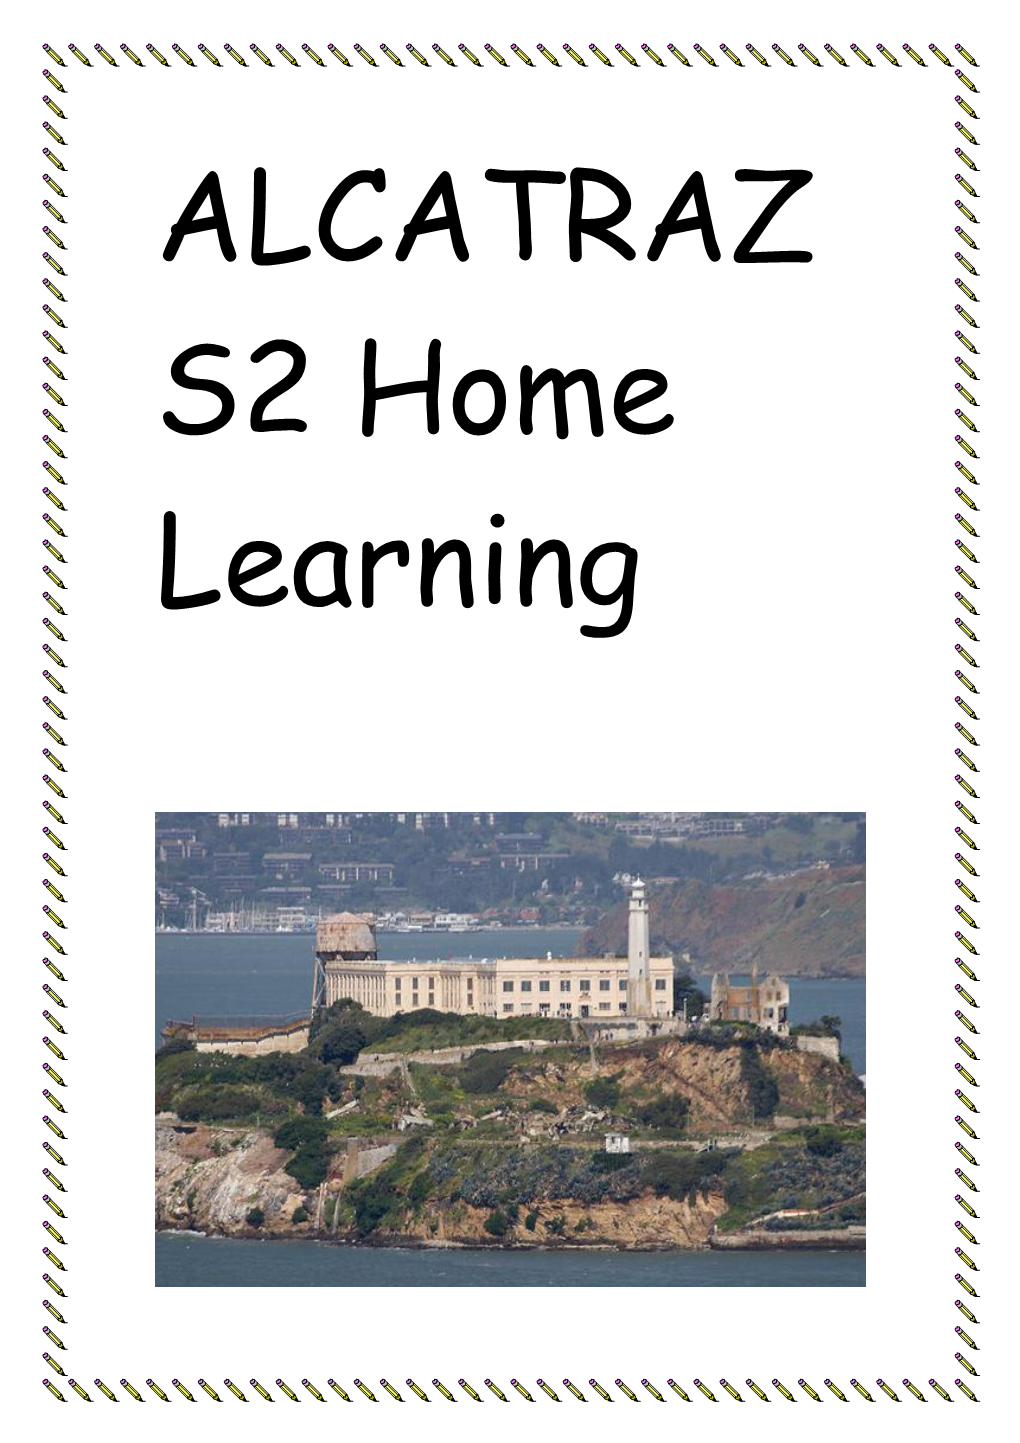 ALCATRAZ S2 Home Learning